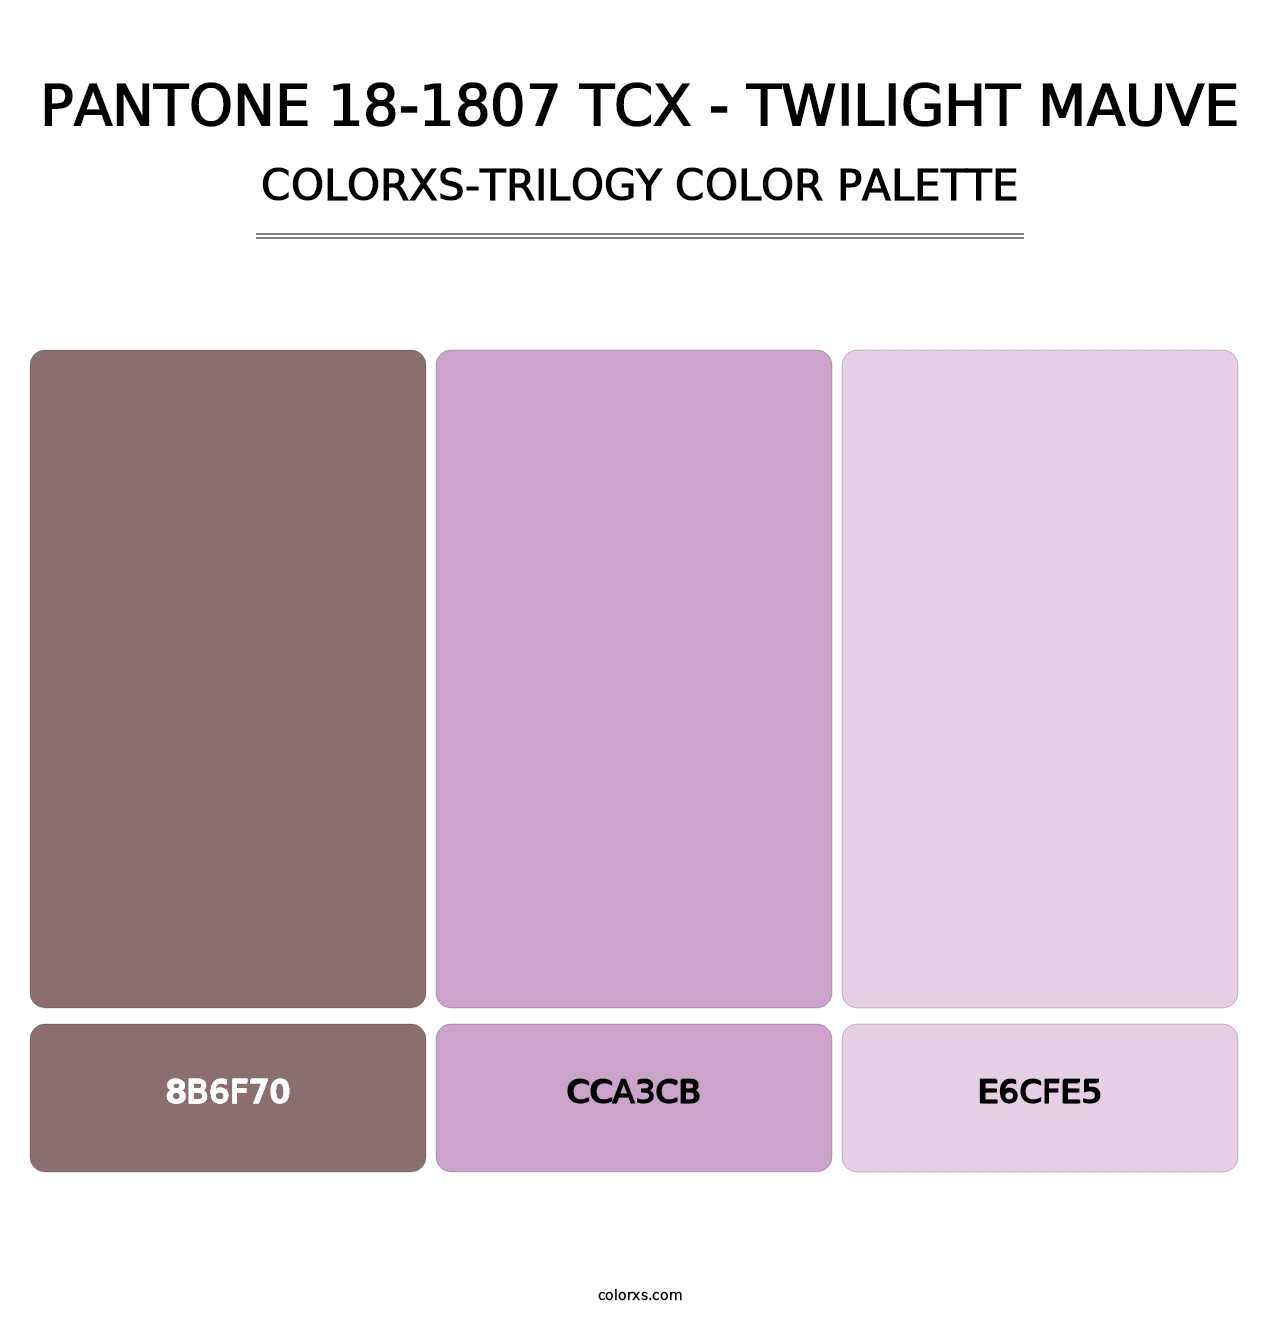 PANTONE 18-1807 TCX - Twilight Mauve - Colorxs Trilogy Palette